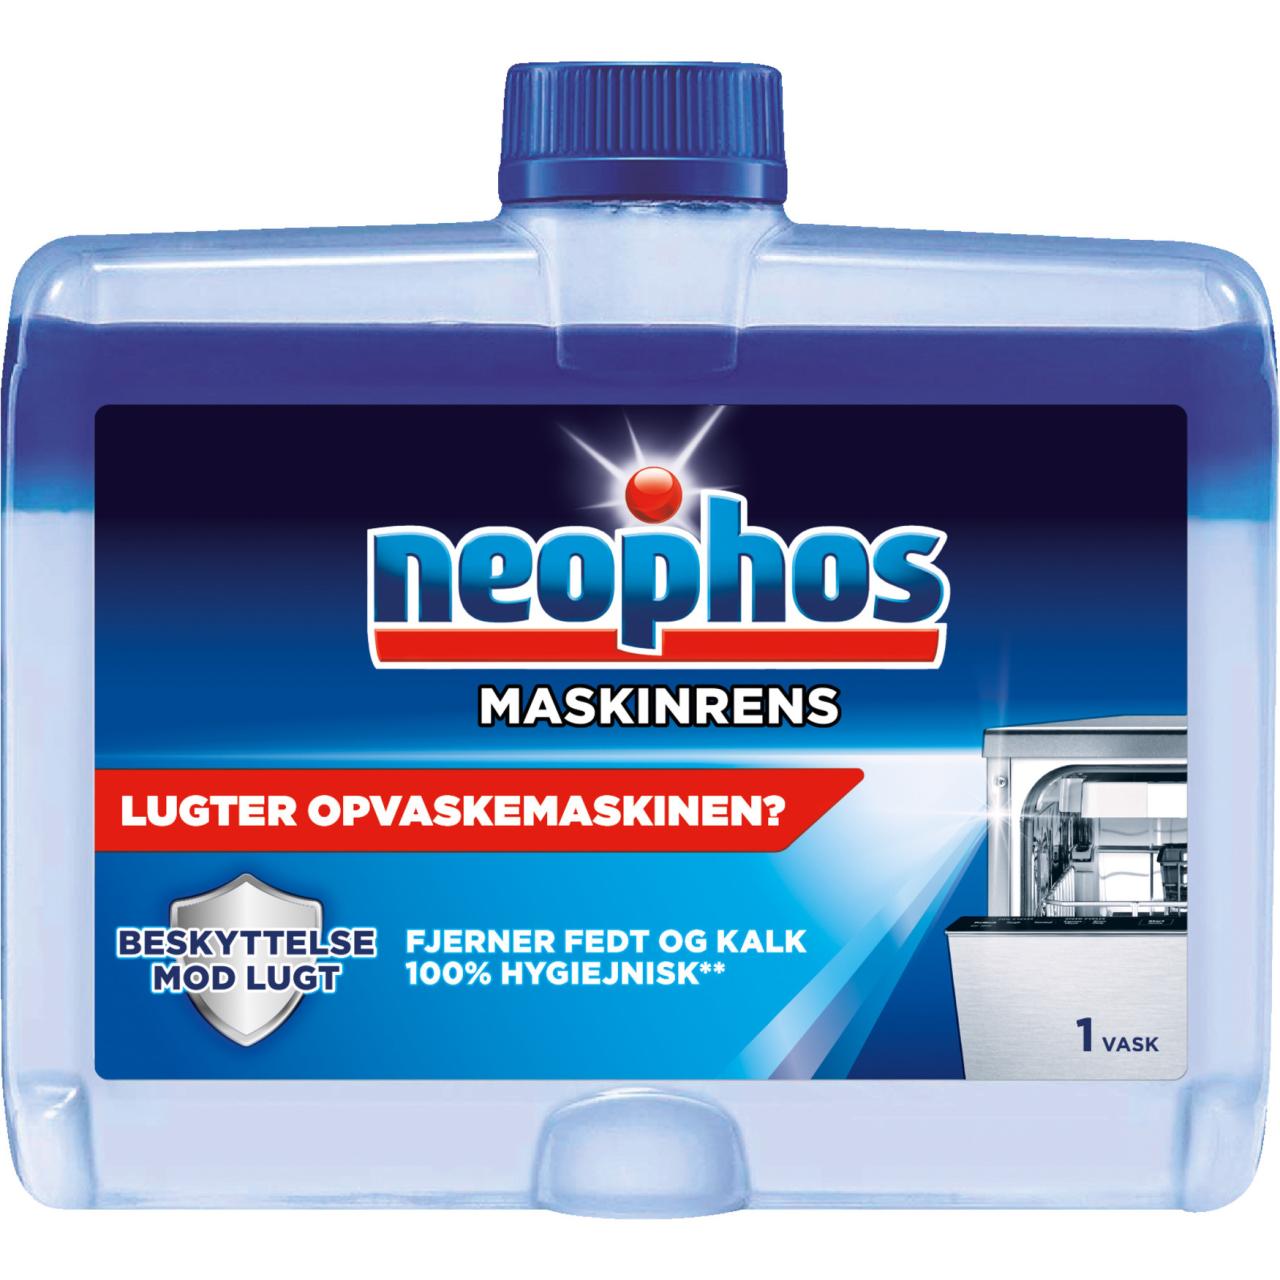 Neophos Maskinrens/Maschinenreiniger 250ml